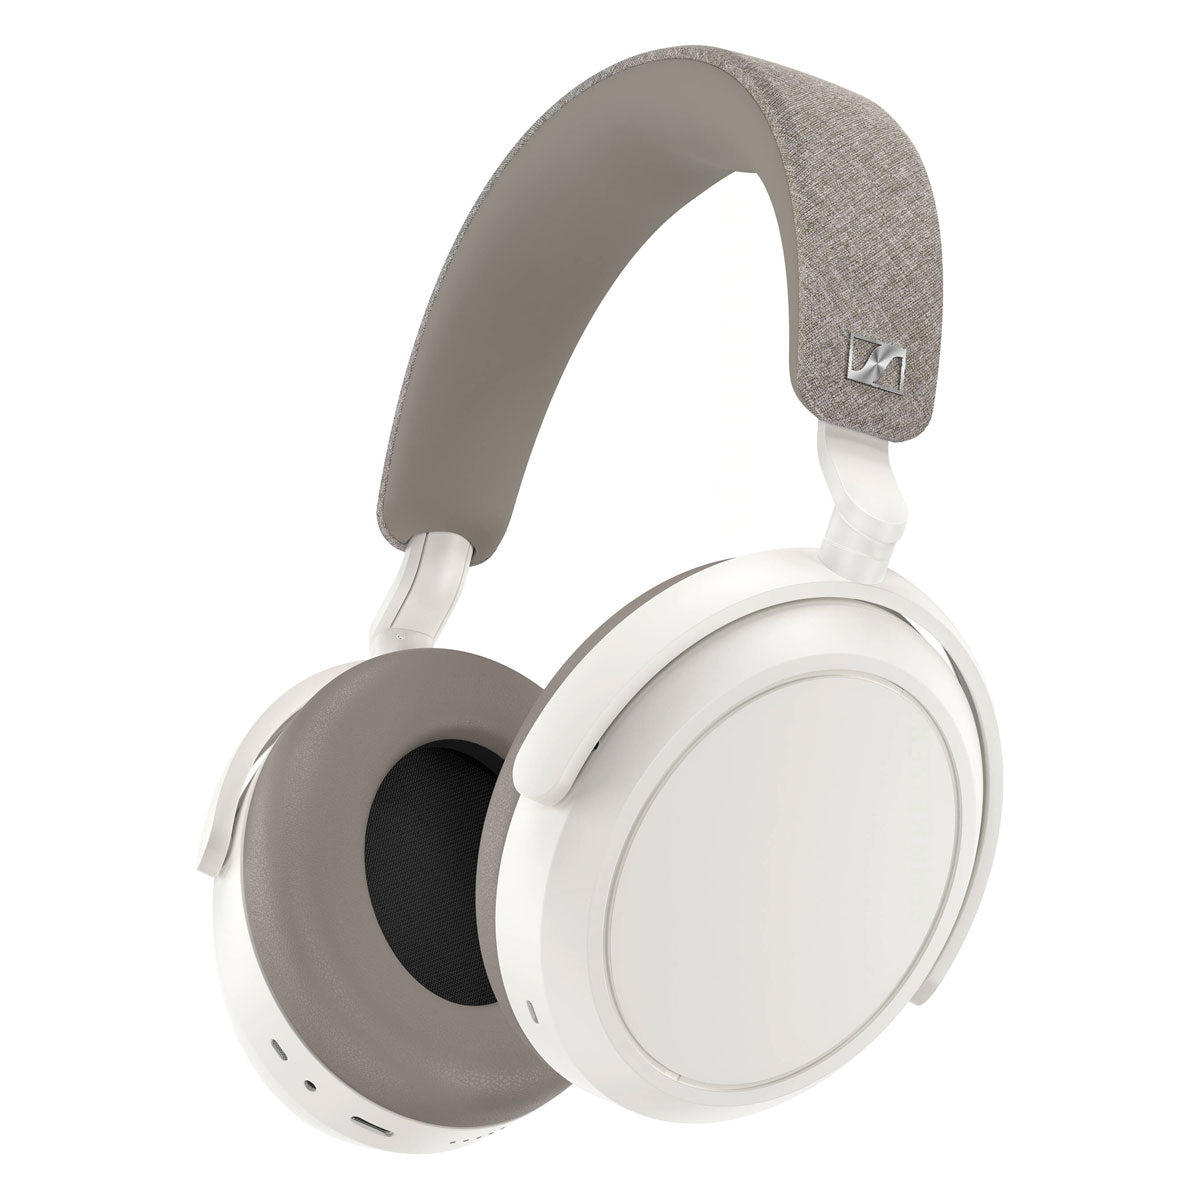 Sennheiser MOMENTUM 4 Noise-Cancelling Wireless Over-Ear Headphones - White - B-Stock